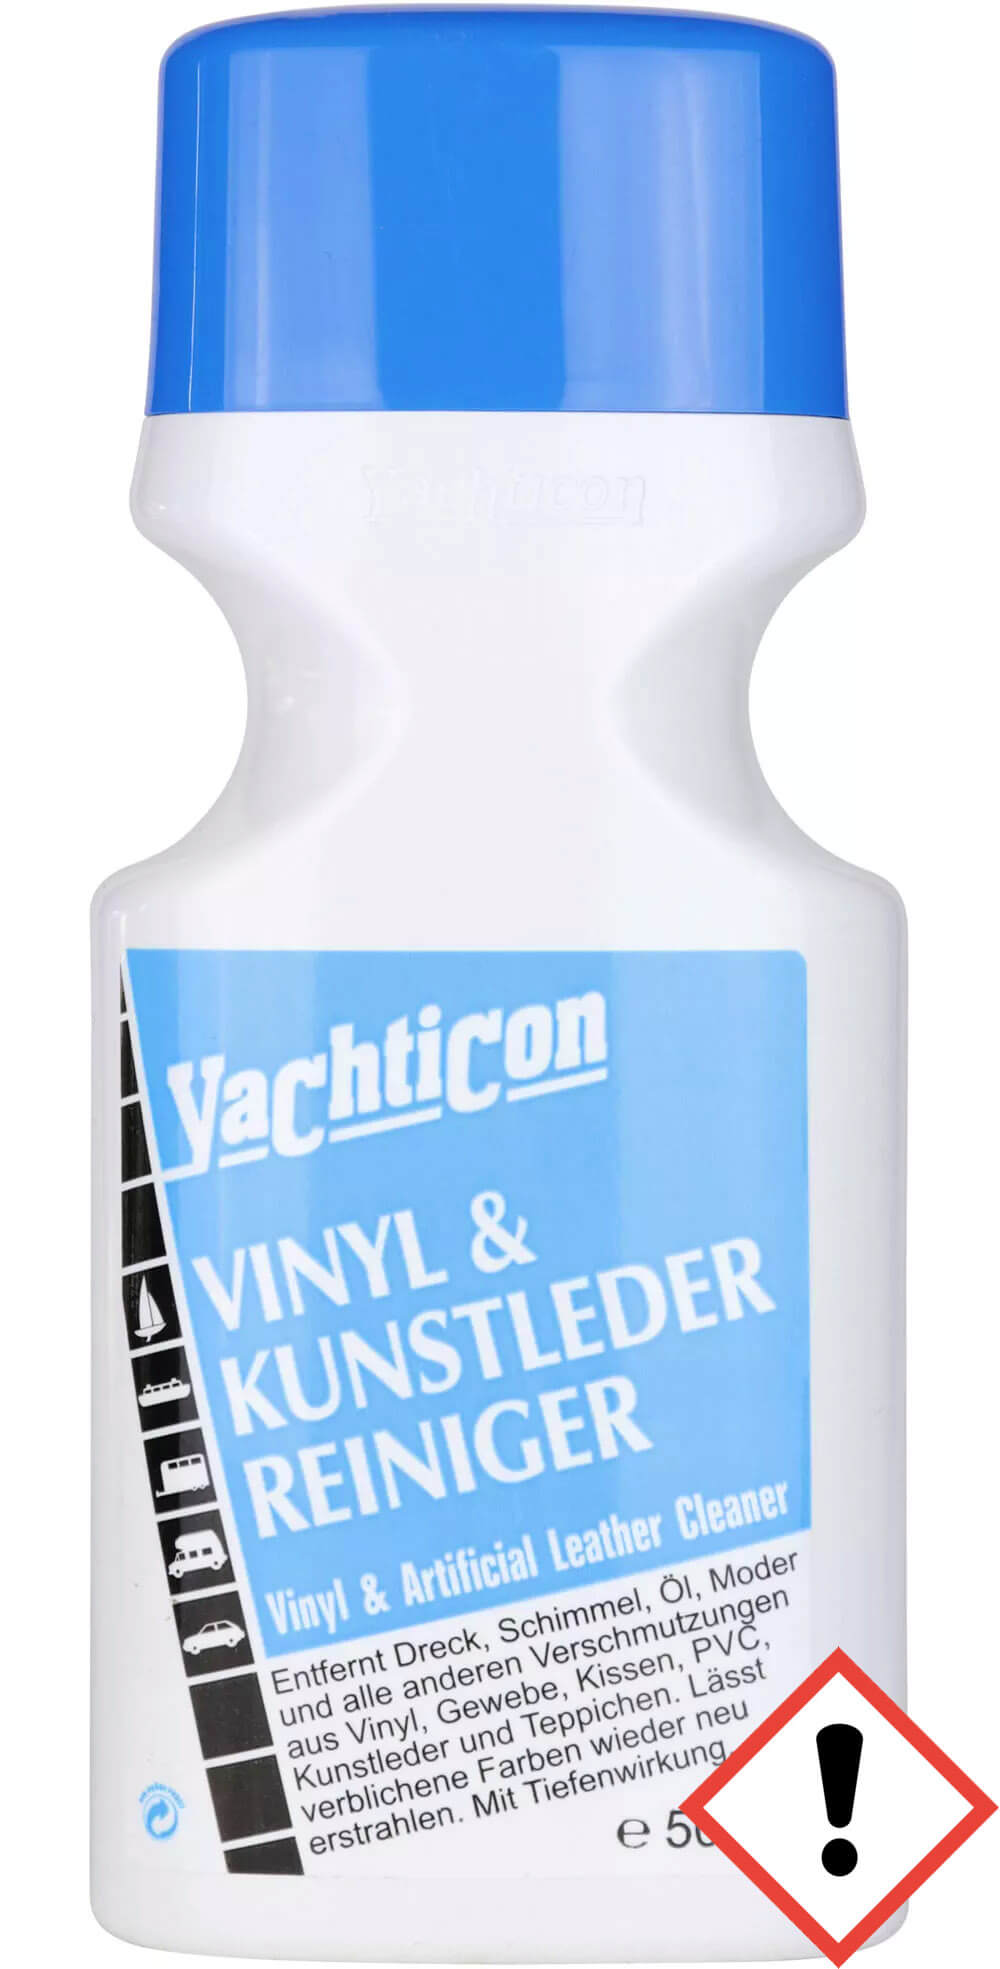 Vinyl & Kunstleder Reiniger 500 ml